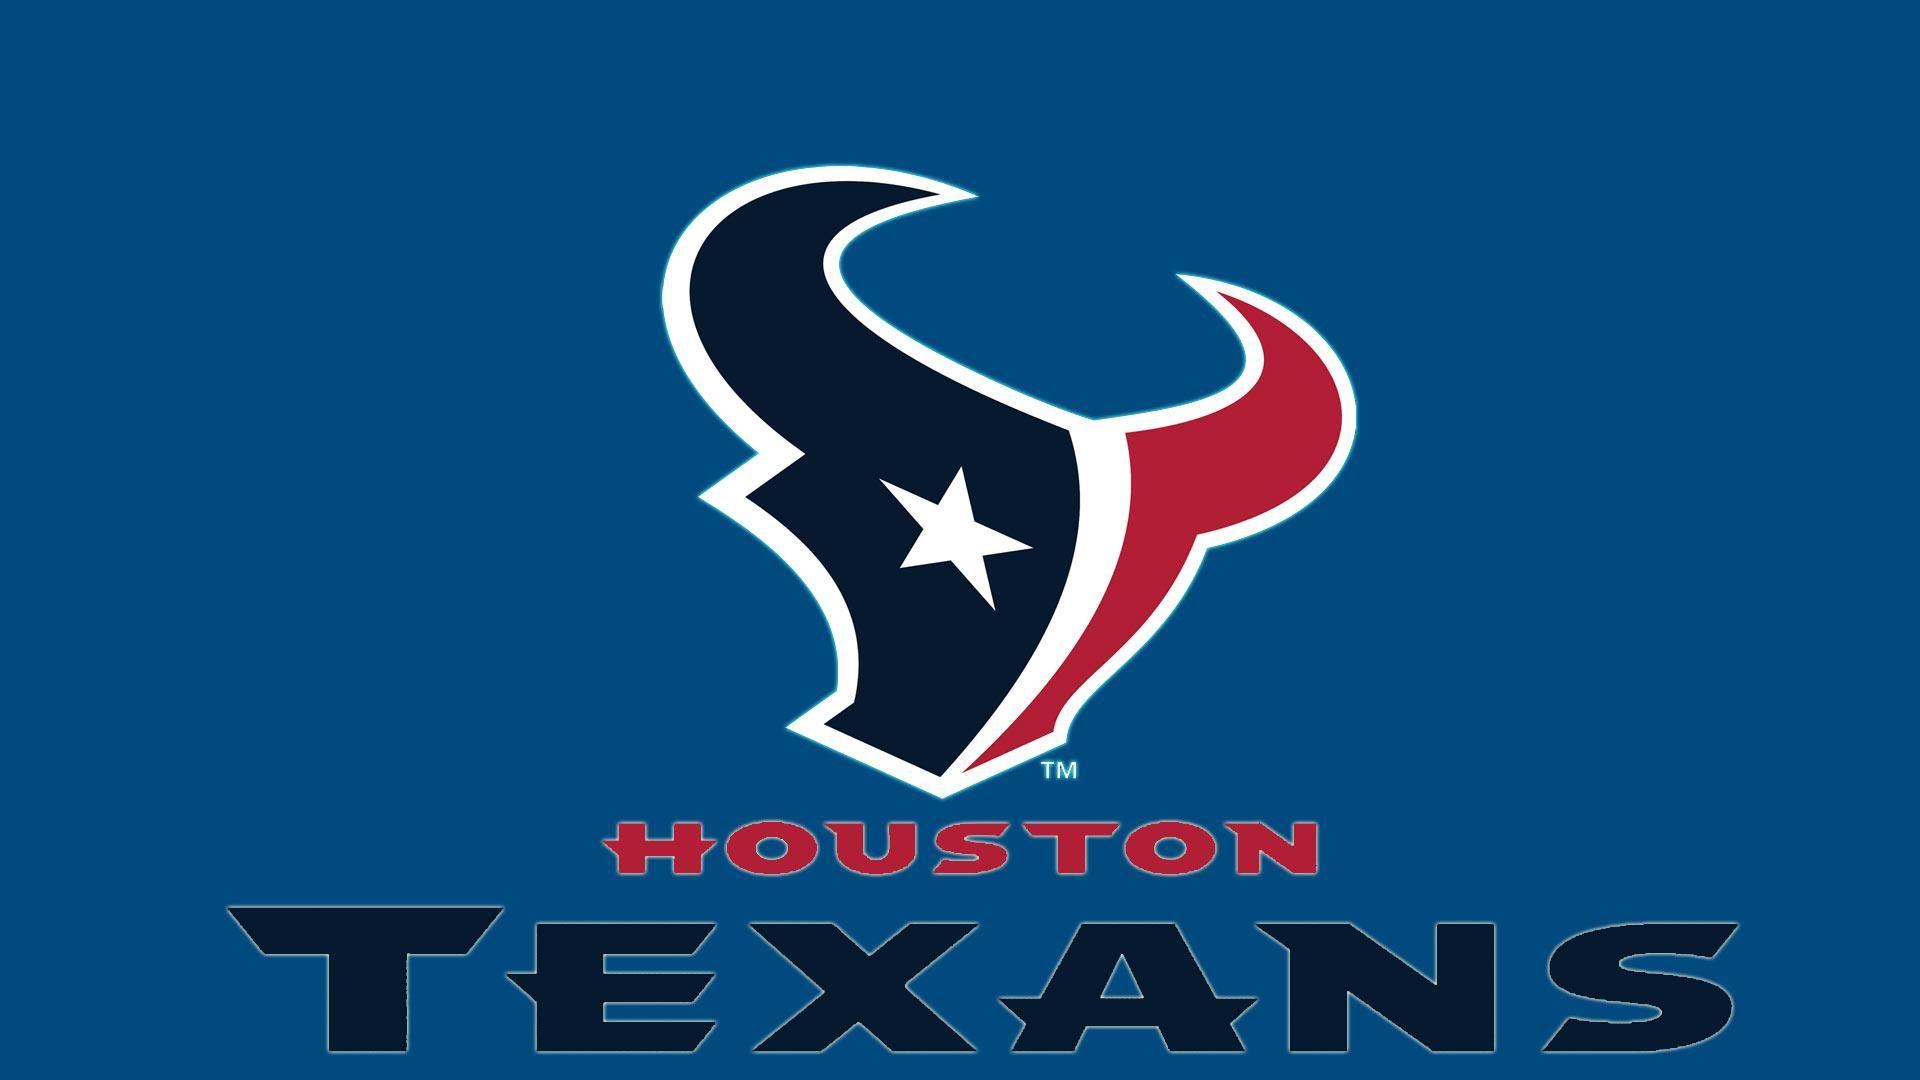 Houston Texans Logo HD 1080p Wallpaper Screen Size 1920×1080. HD